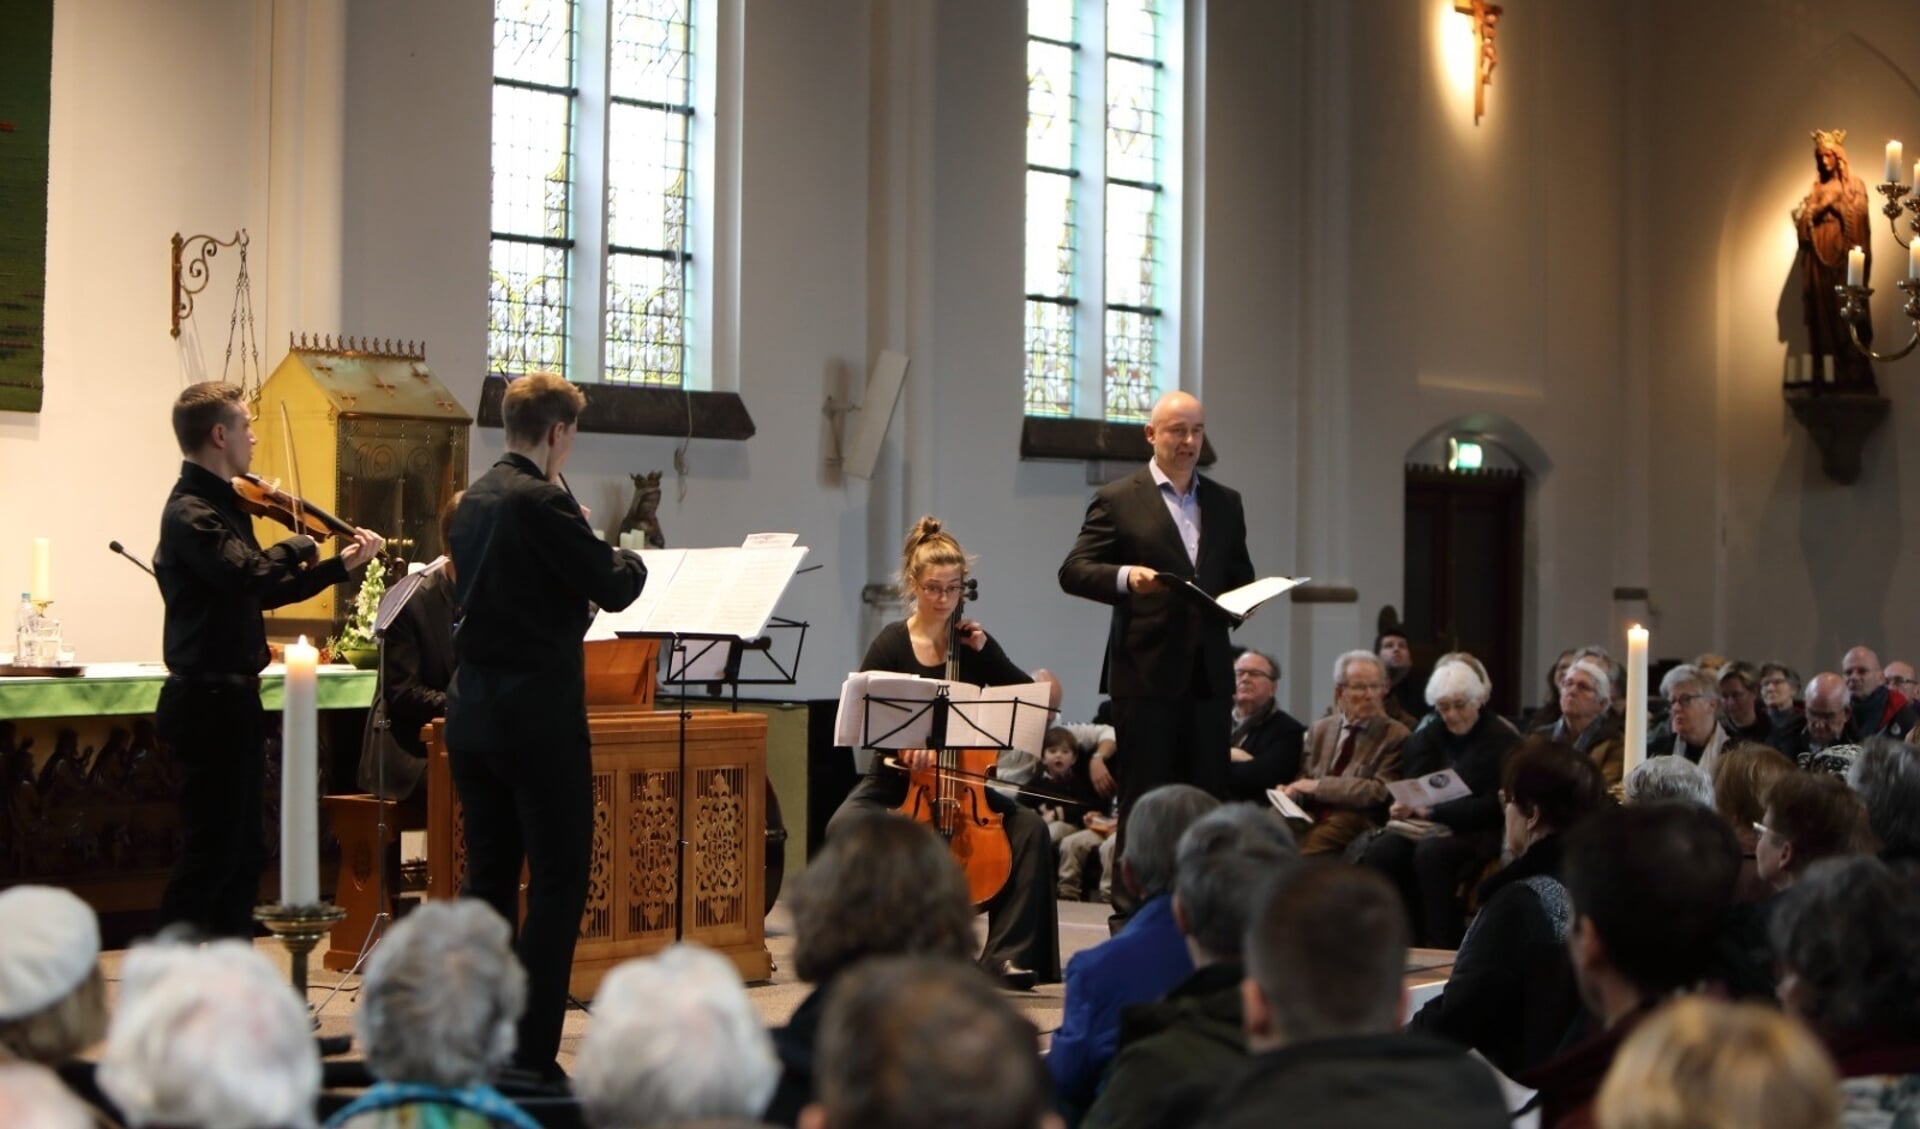 De uitvoering van een cantate in de Jozefkerk.